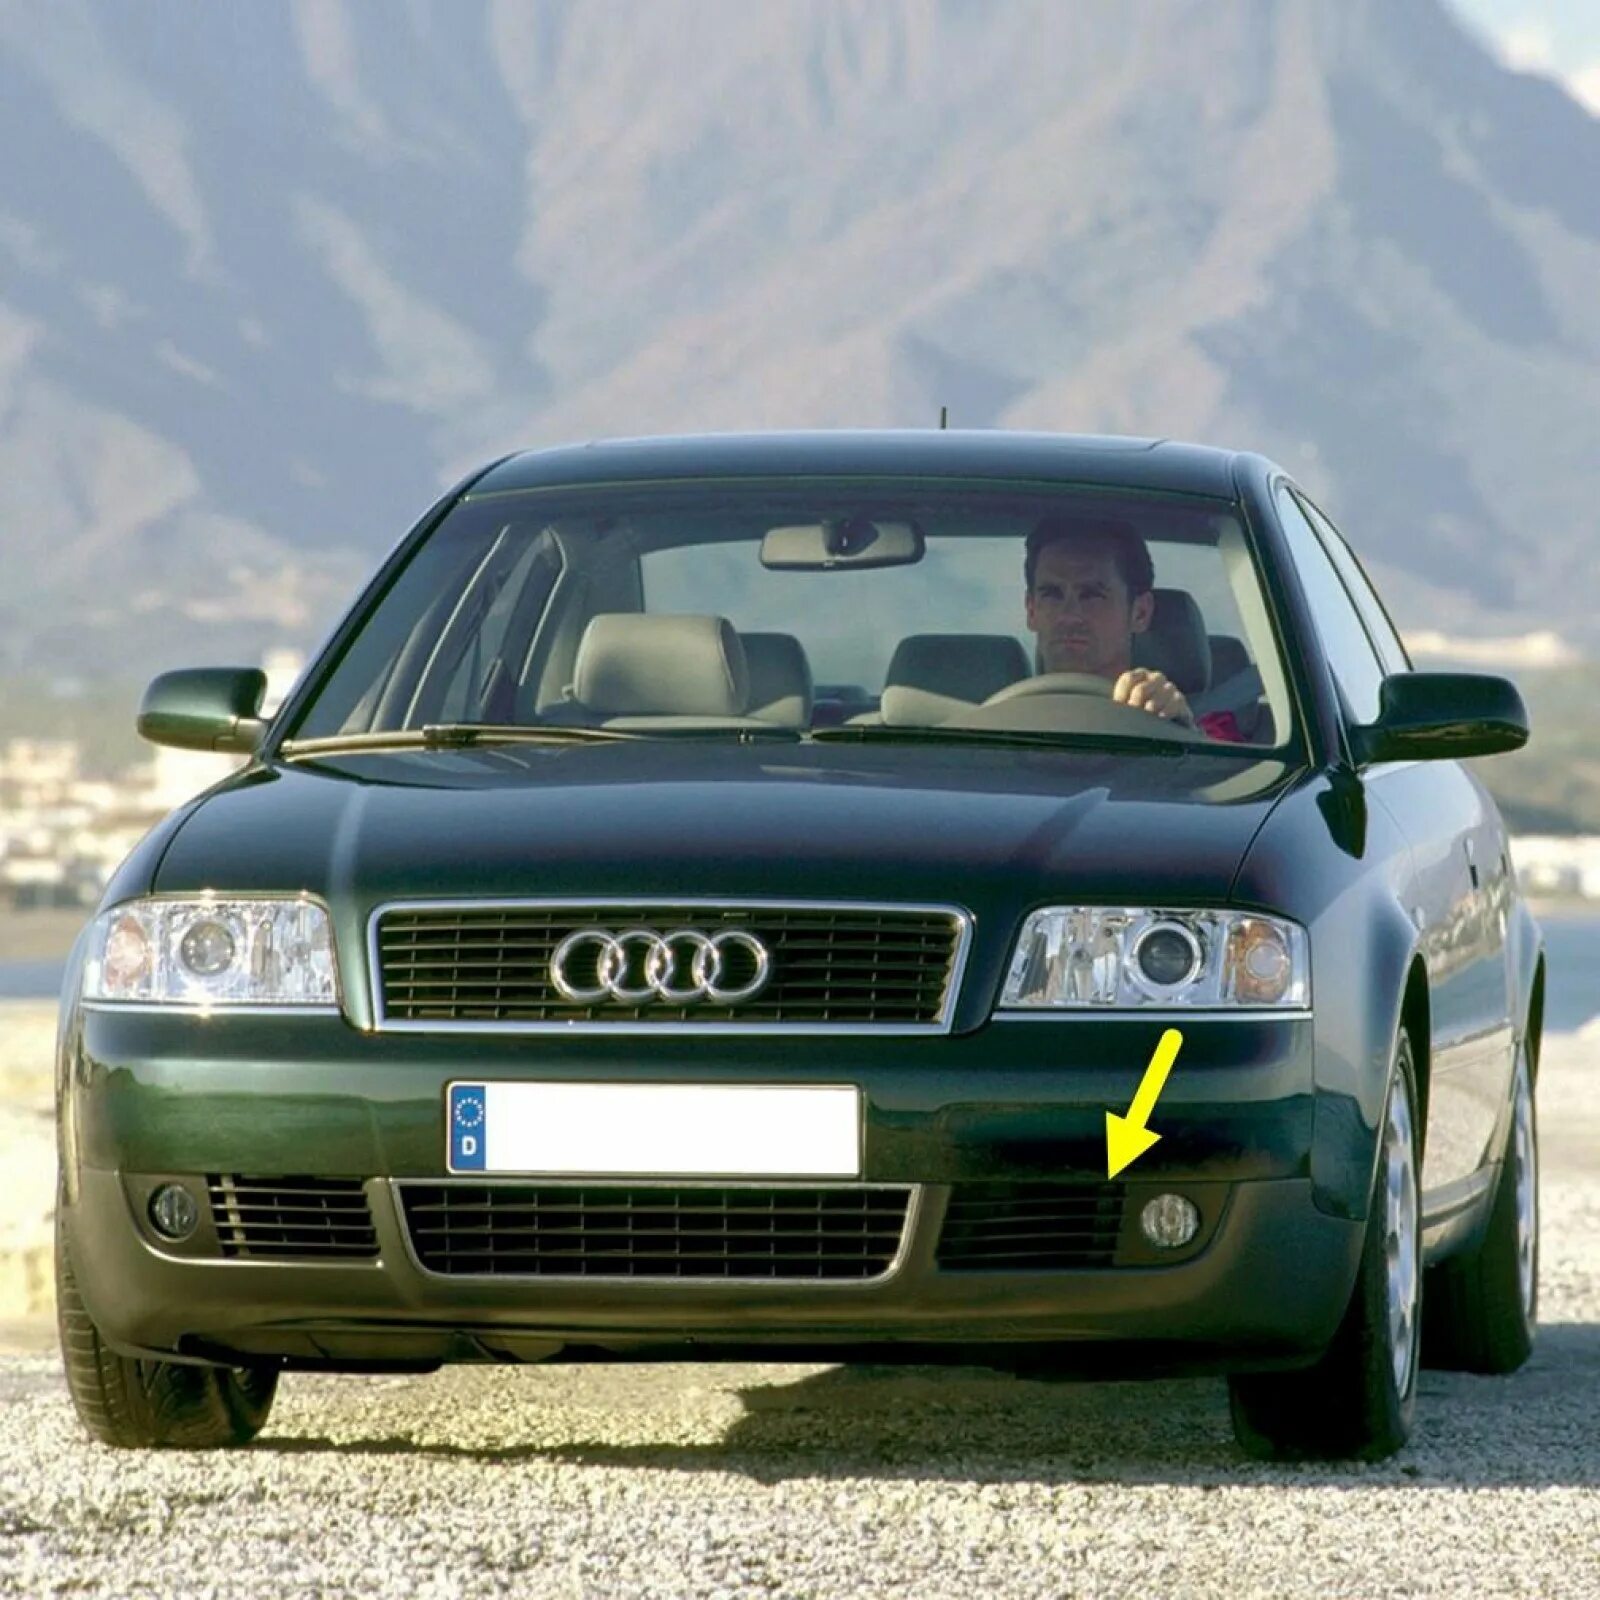 Audi a6 2001. Audi a6 c5. Audi a6 c5 1997. Audi a6 c4 1998.